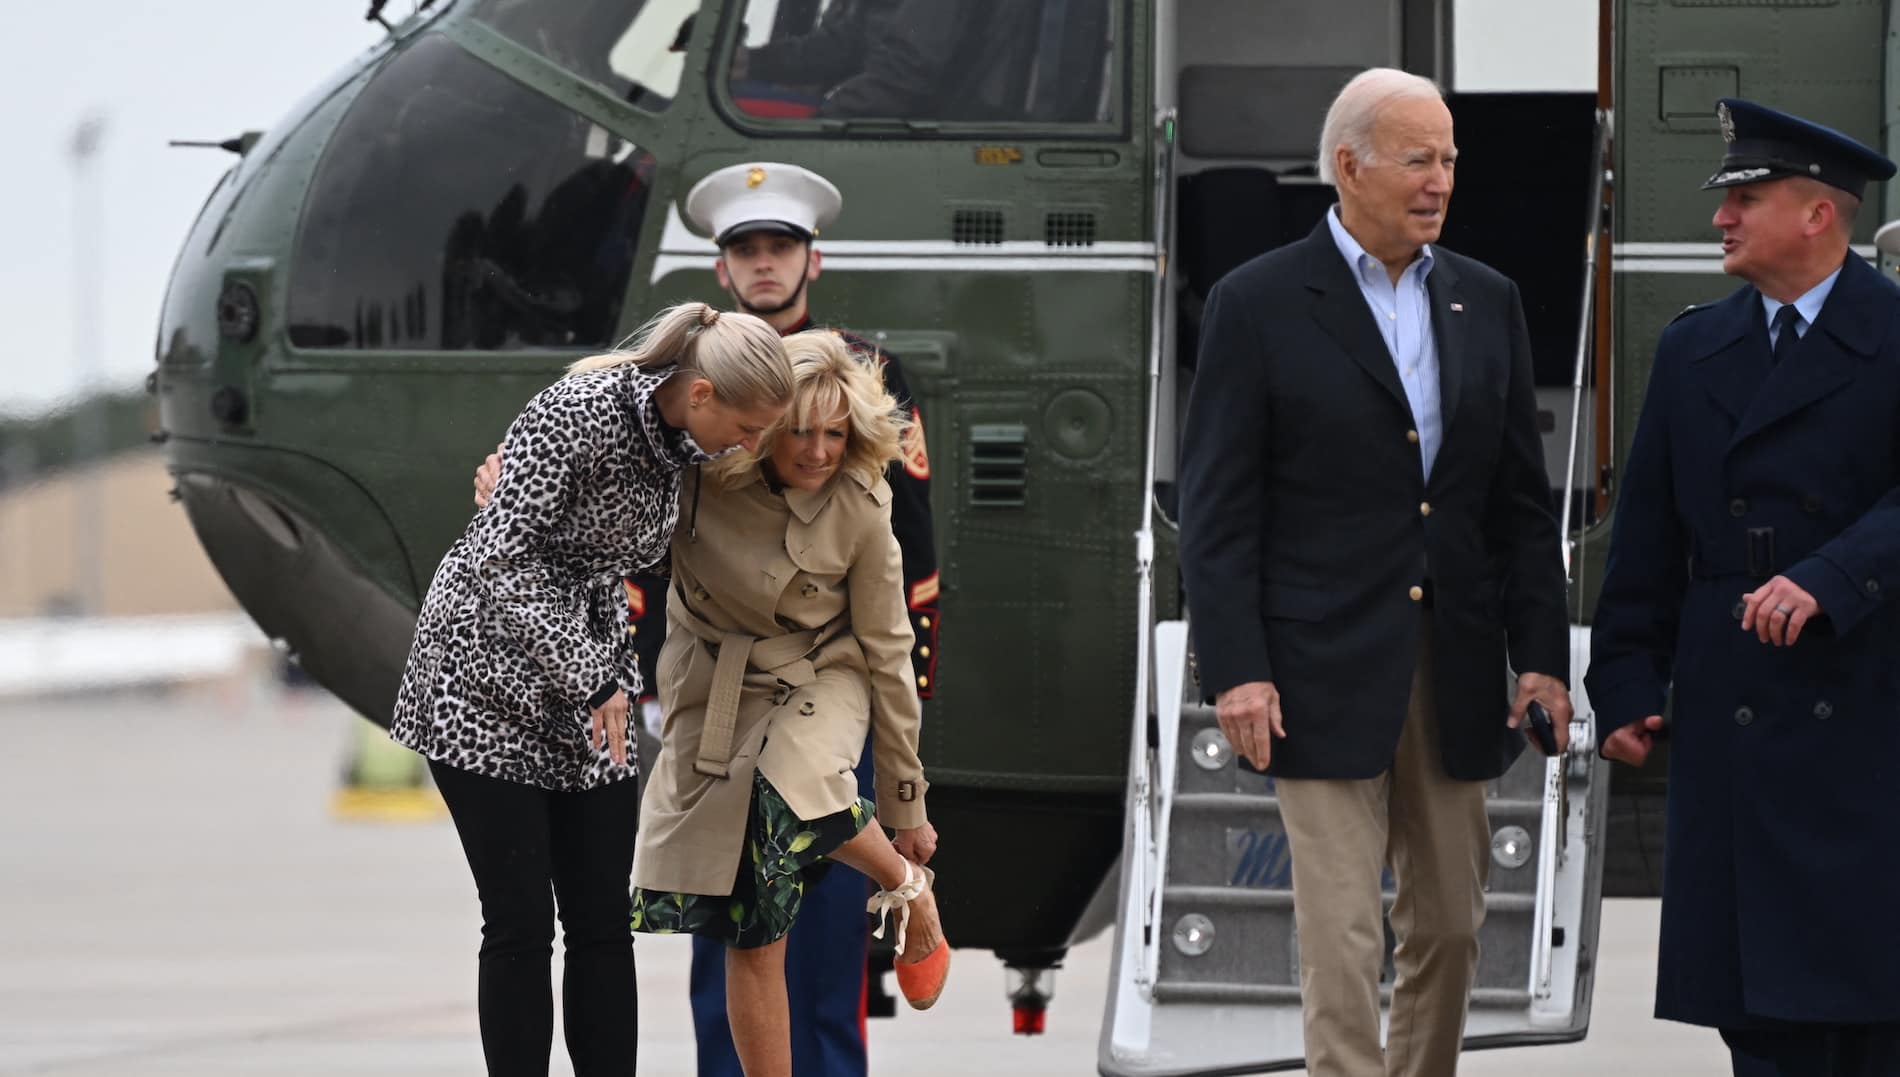 Joe Biden viaja a Puerto Rico este lunes tras paso de huracán Fiona; Florida evalúa impacto de Ian